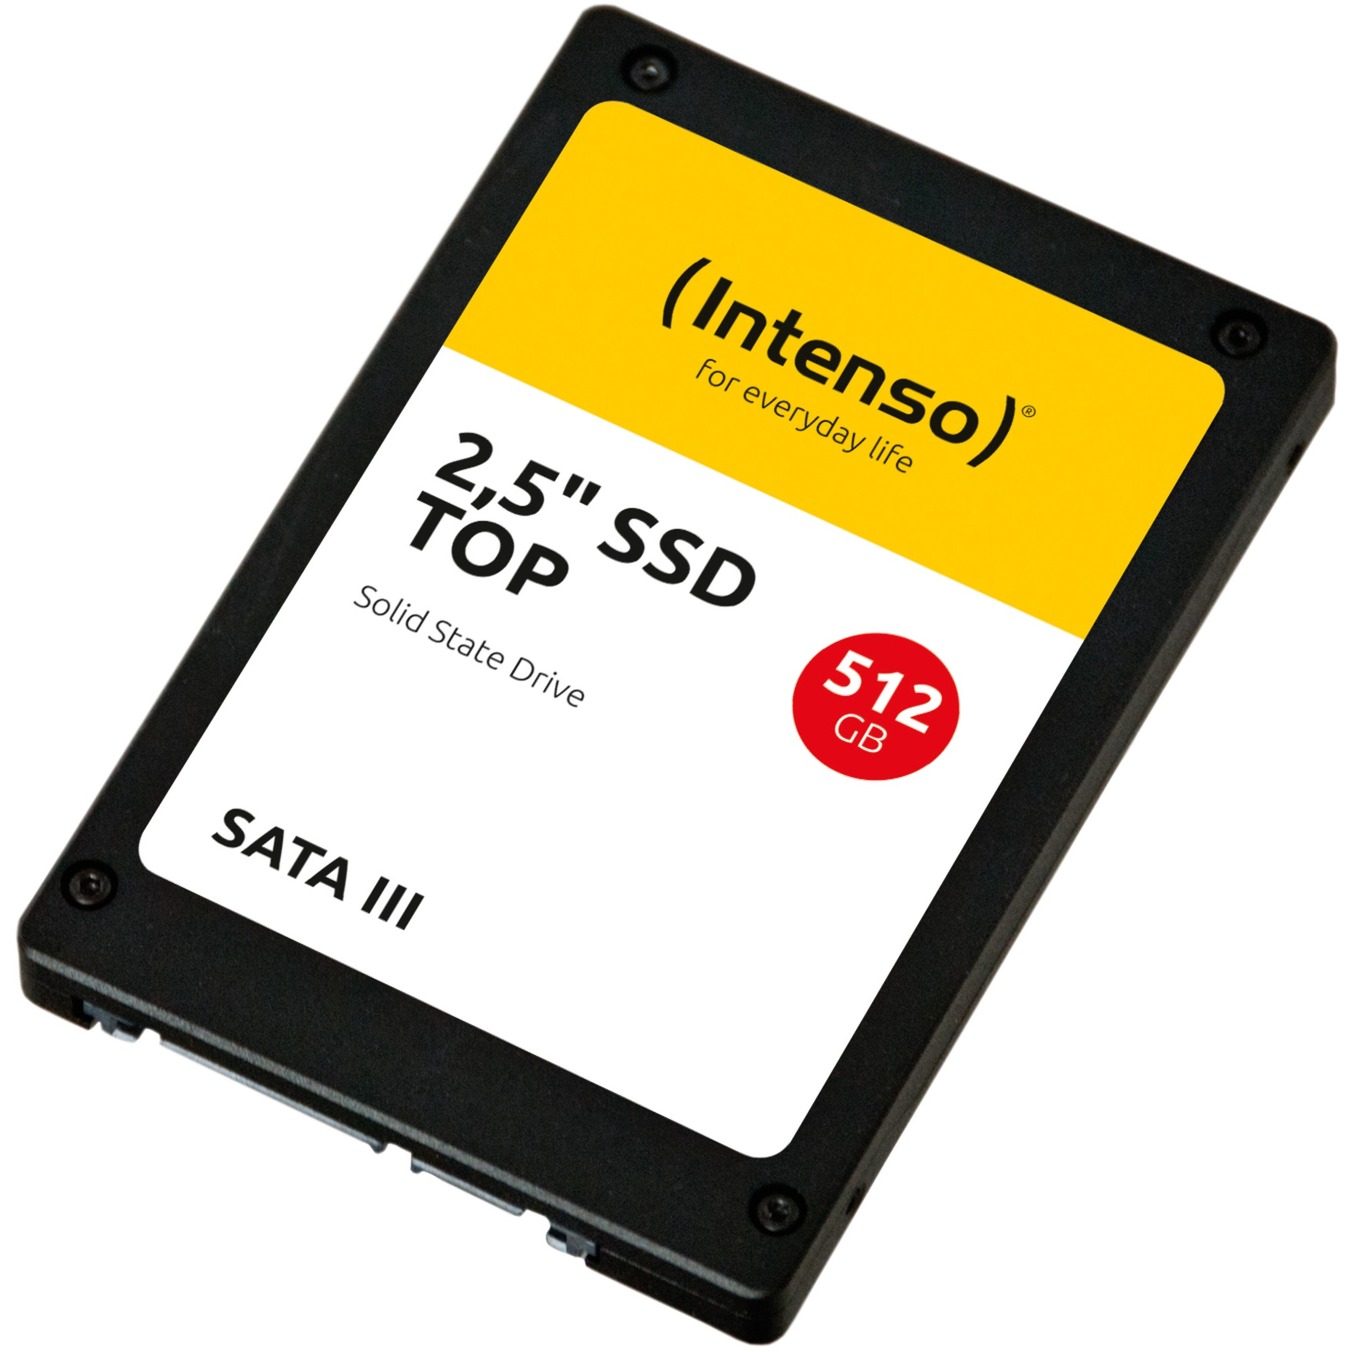 Image of Alternate - TOP SSD 512 GB online einkaufen bei Alternate